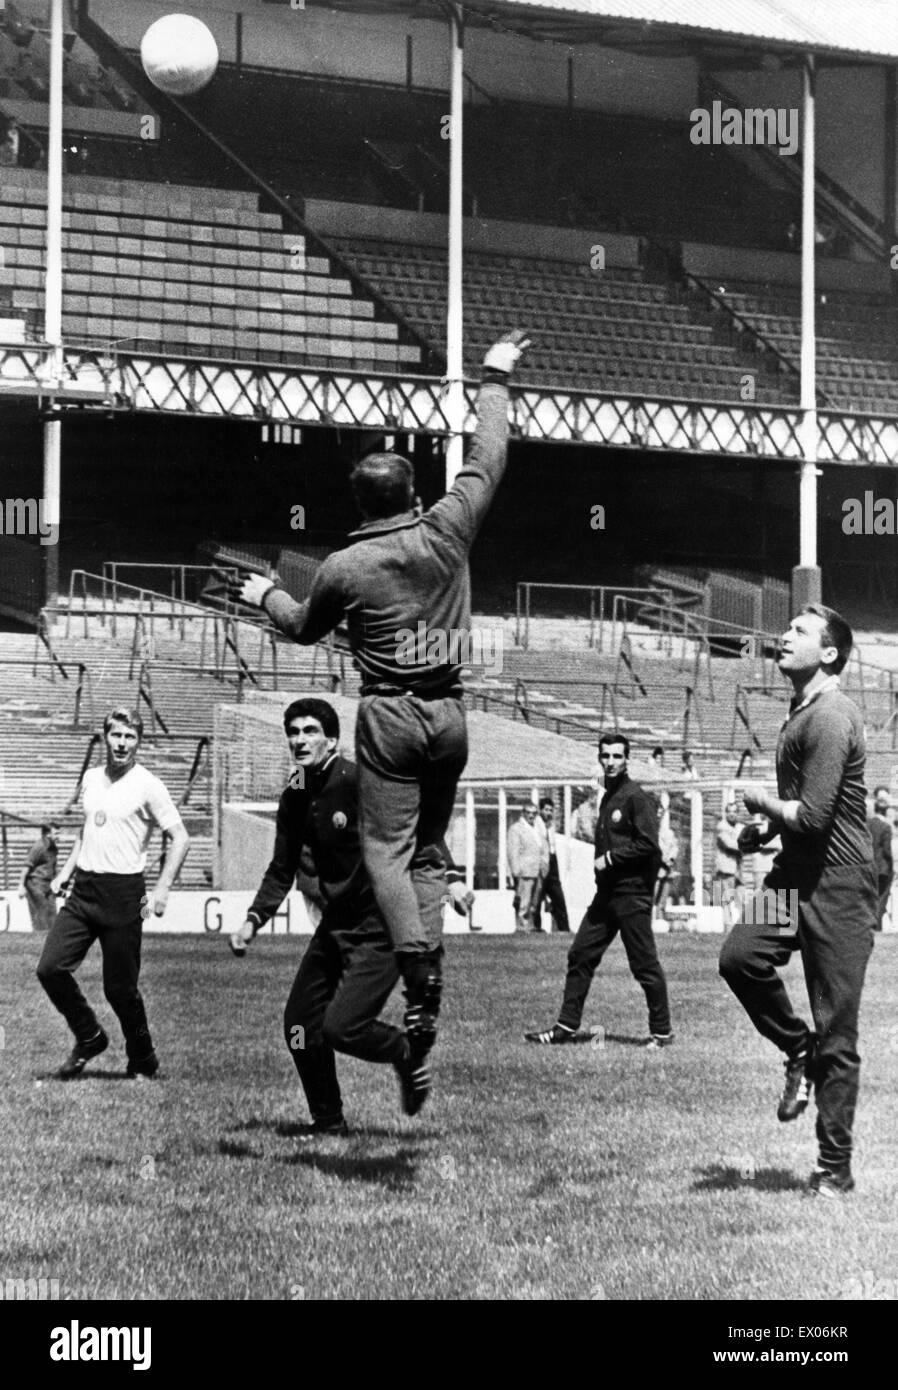 De Goodison Park, home à Everton FC, le stade de football est situé dans la région de Walton, Liverpool, Angleterre. 9e juillet 1966. Aperçu de la Coupe du monde à Goodison Park, où certains l'équipe bulgare, qui satisfont le Brésil (mardi soir), sont illustrés au cours de session pratique sur Banque D'Images